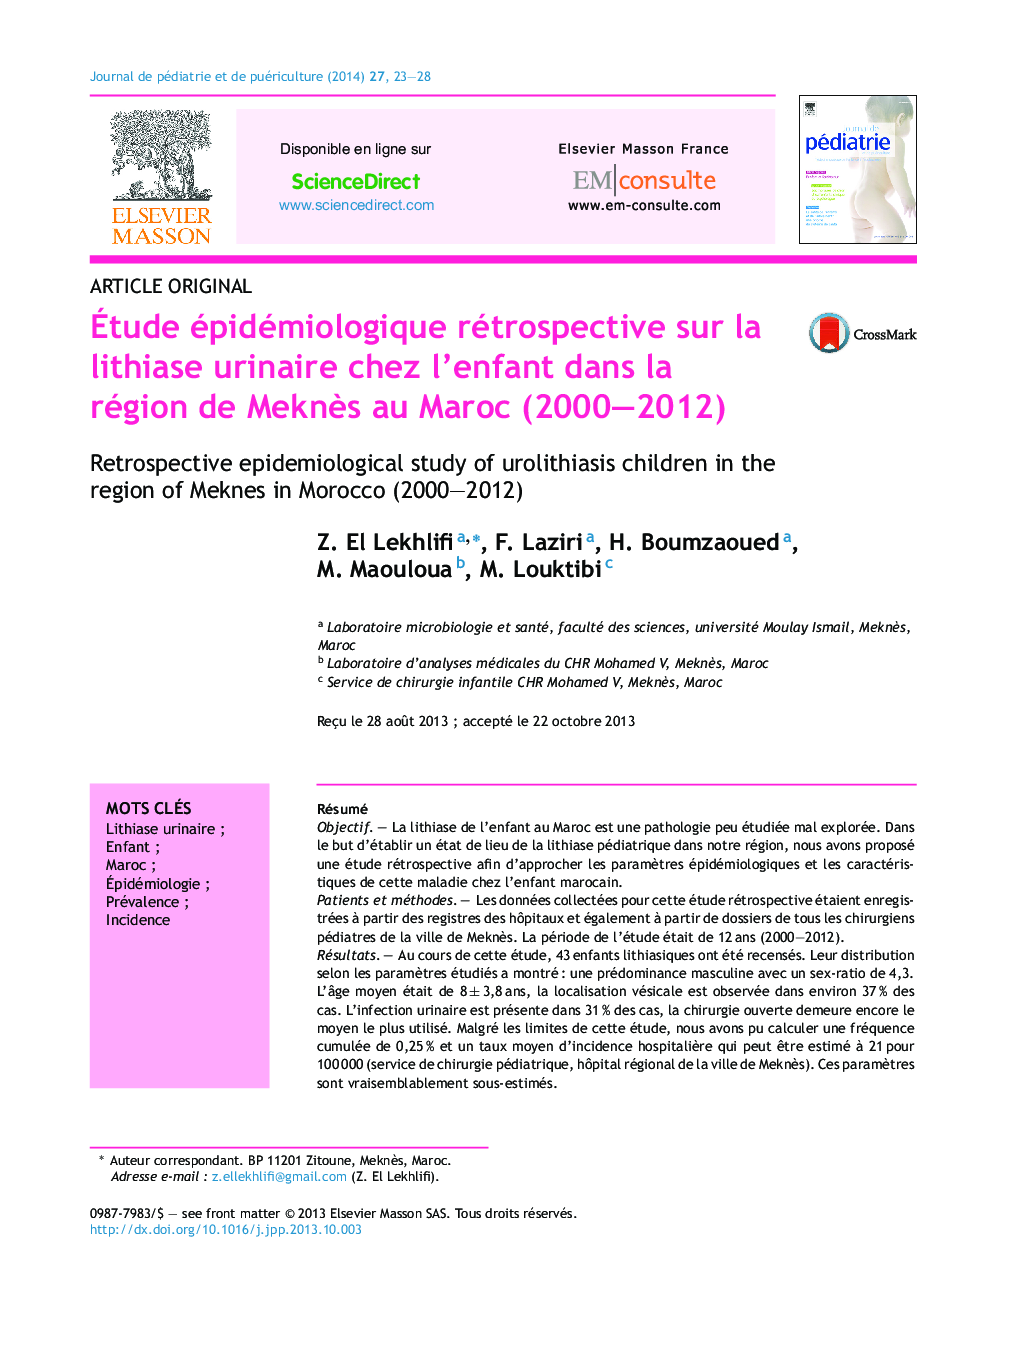 Étude épidémiologique rétrospective sur la lithiase urinaire chez l’enfant dans la région de Meknès au Maroc (2000–2012)